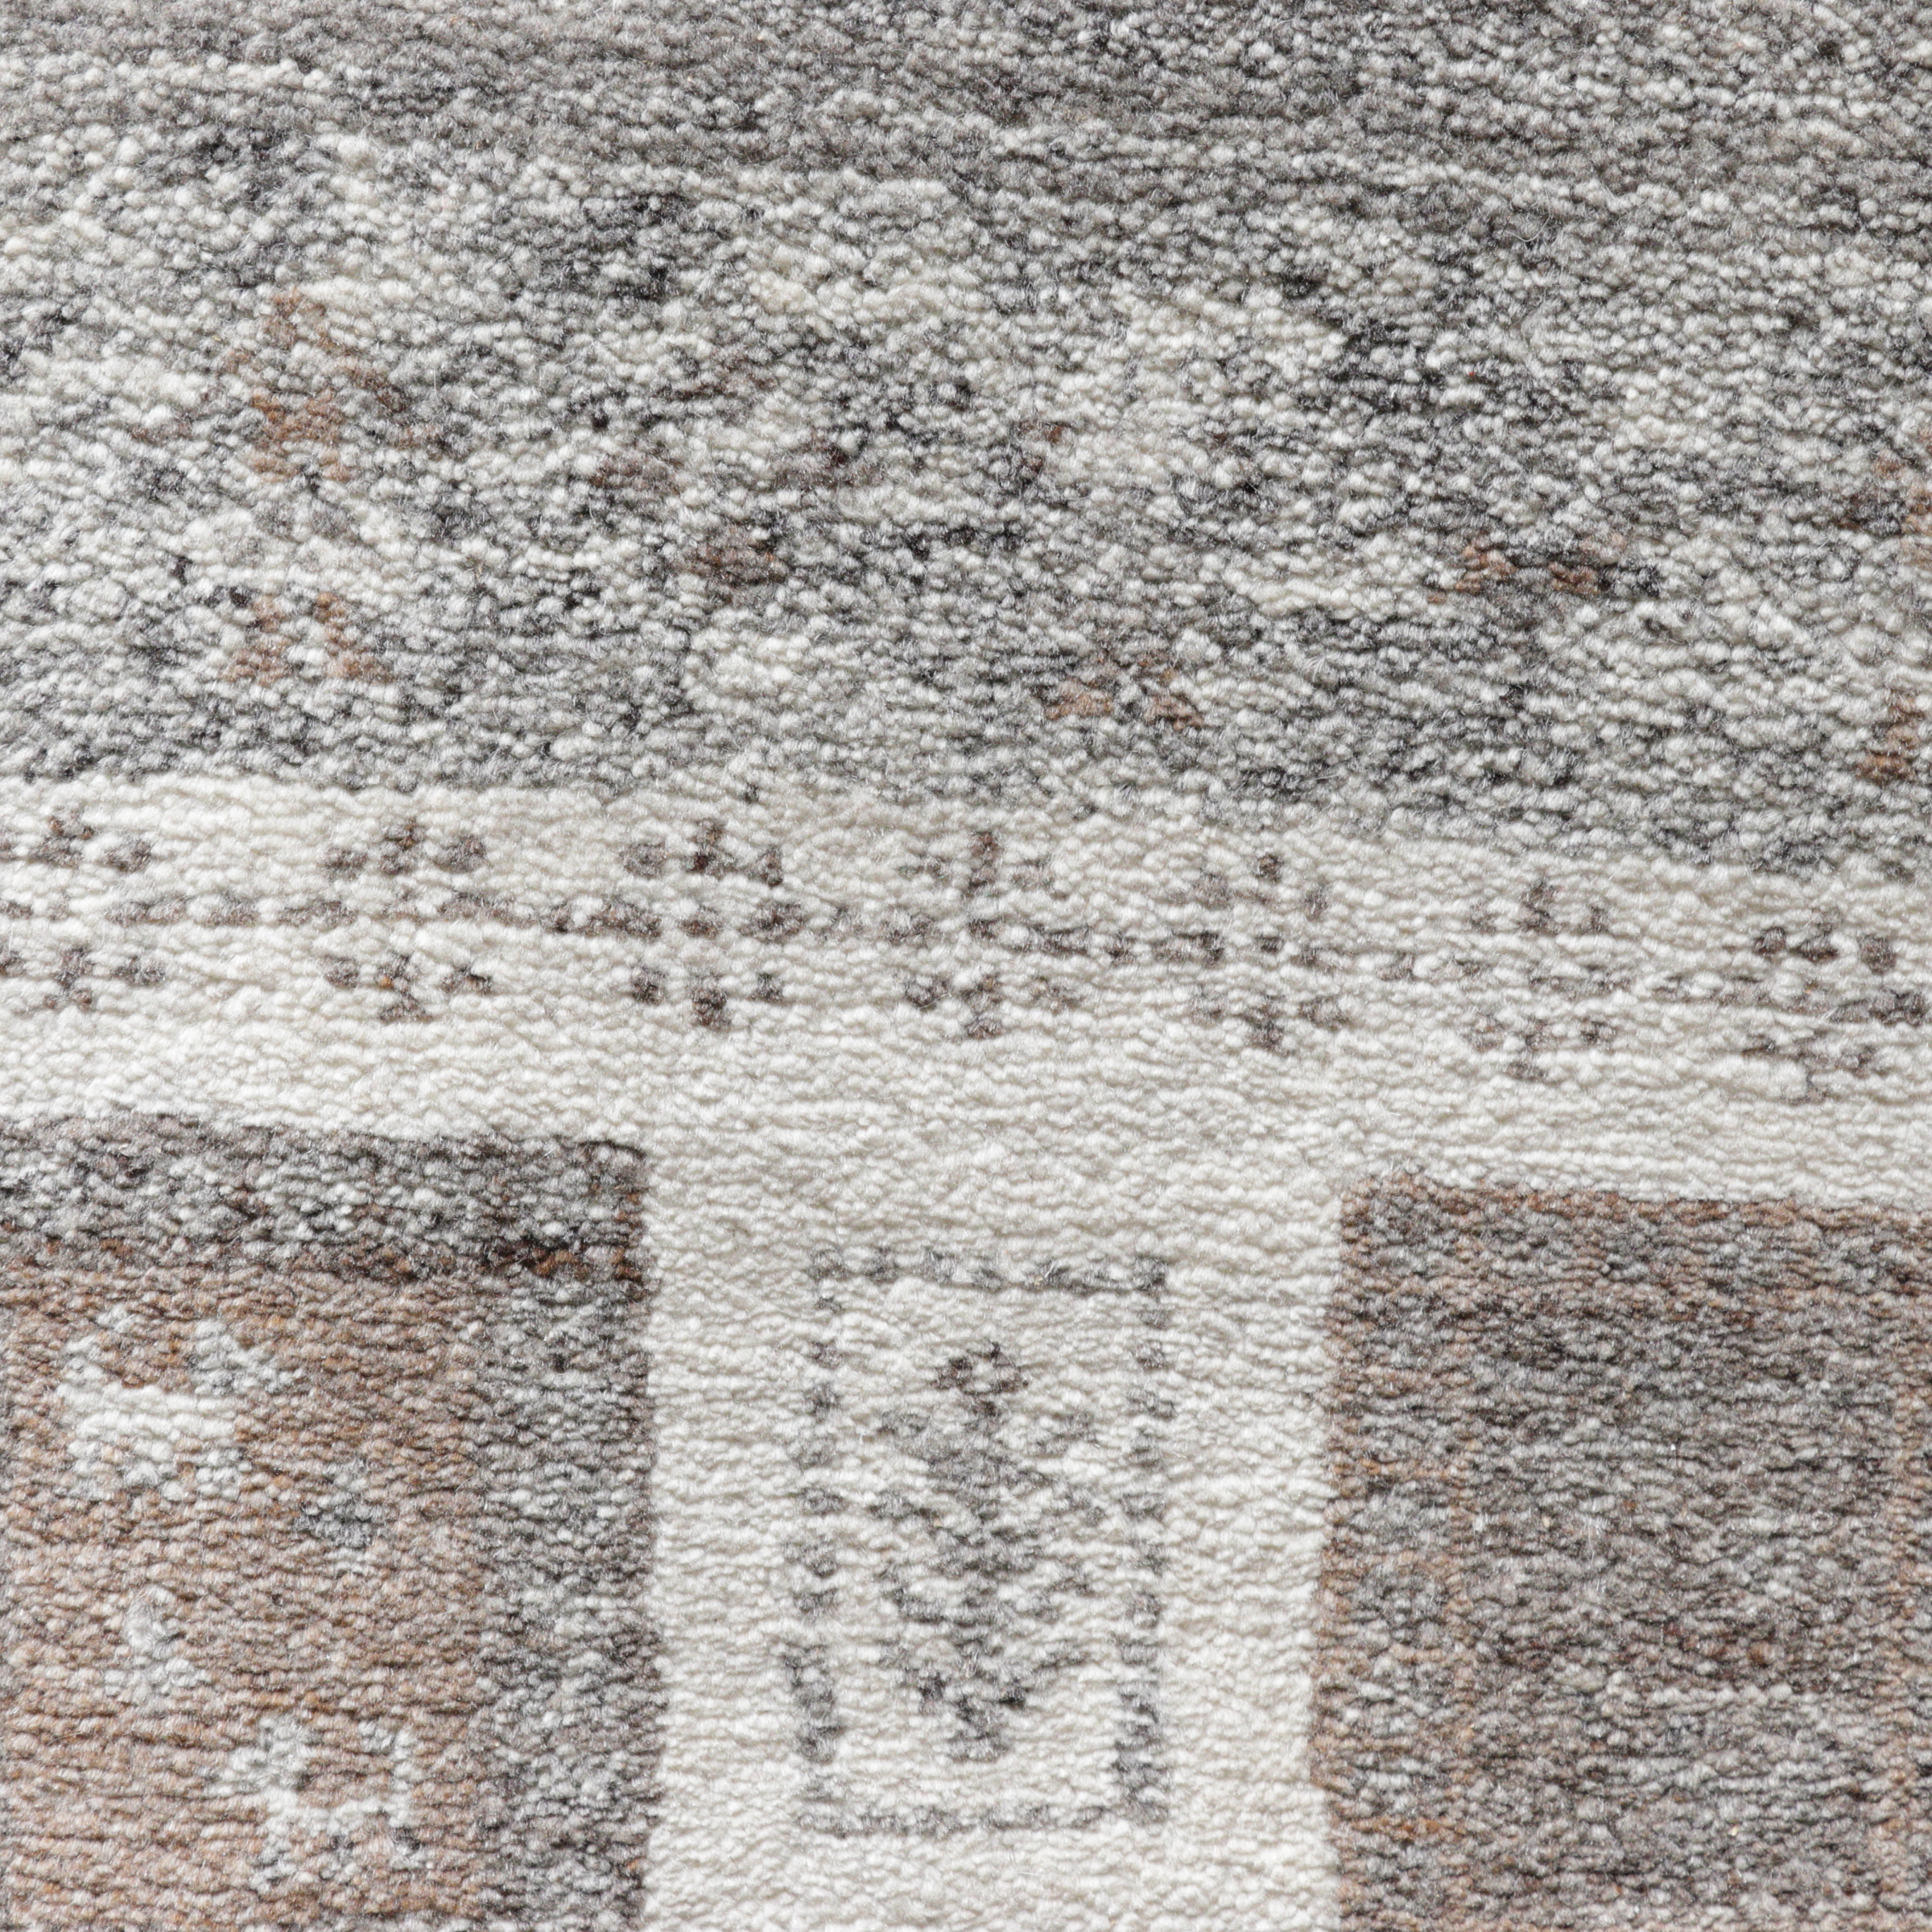 Nomade de Luxe, Gabbeh Natur Pur Kollektion, handgeknüpft aus Schurwolle, Detailansicht